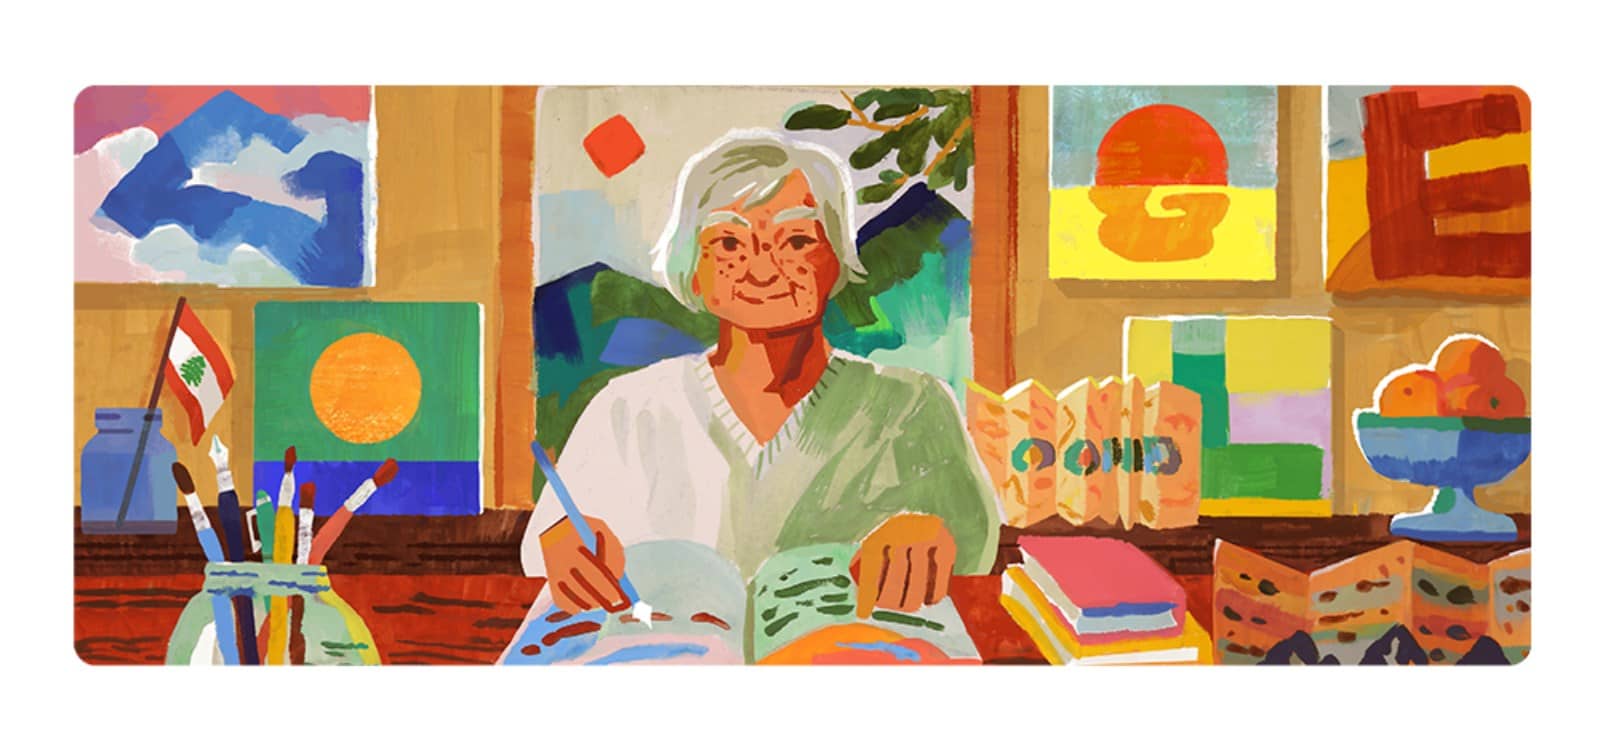 Doodle Google : Etel Adnan en train de peindre dans un atelier